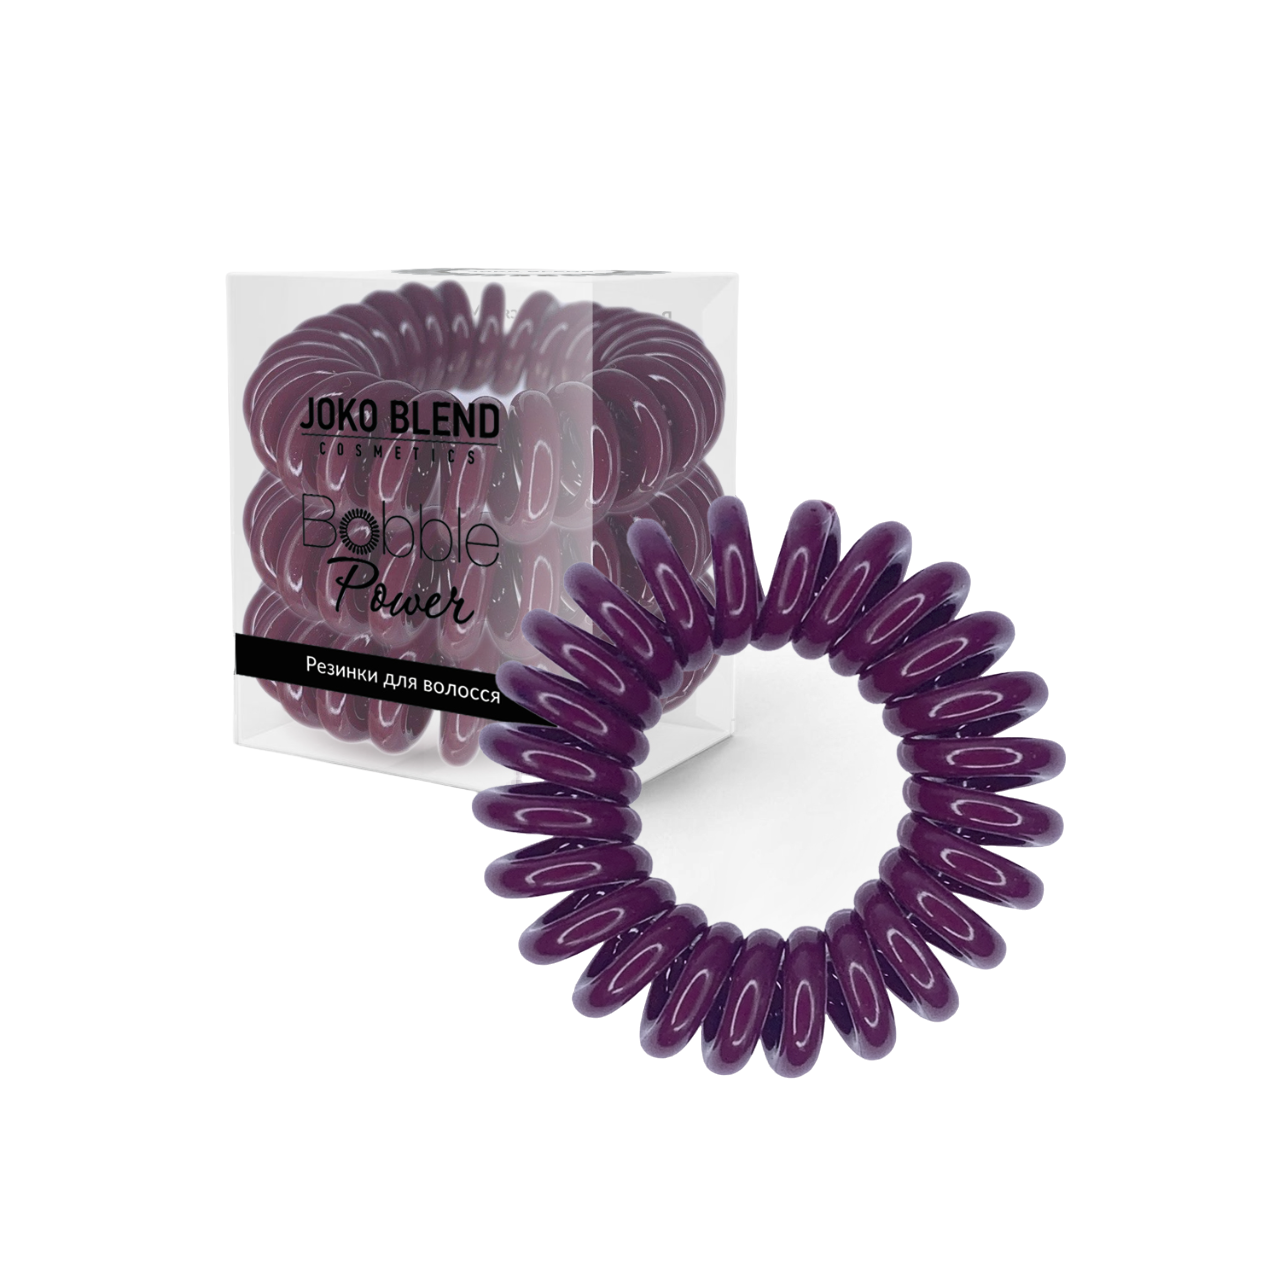 Набор резинок для волос Joko Blend Power Bobble Vine, бордовый, 3 шт. - фото 1